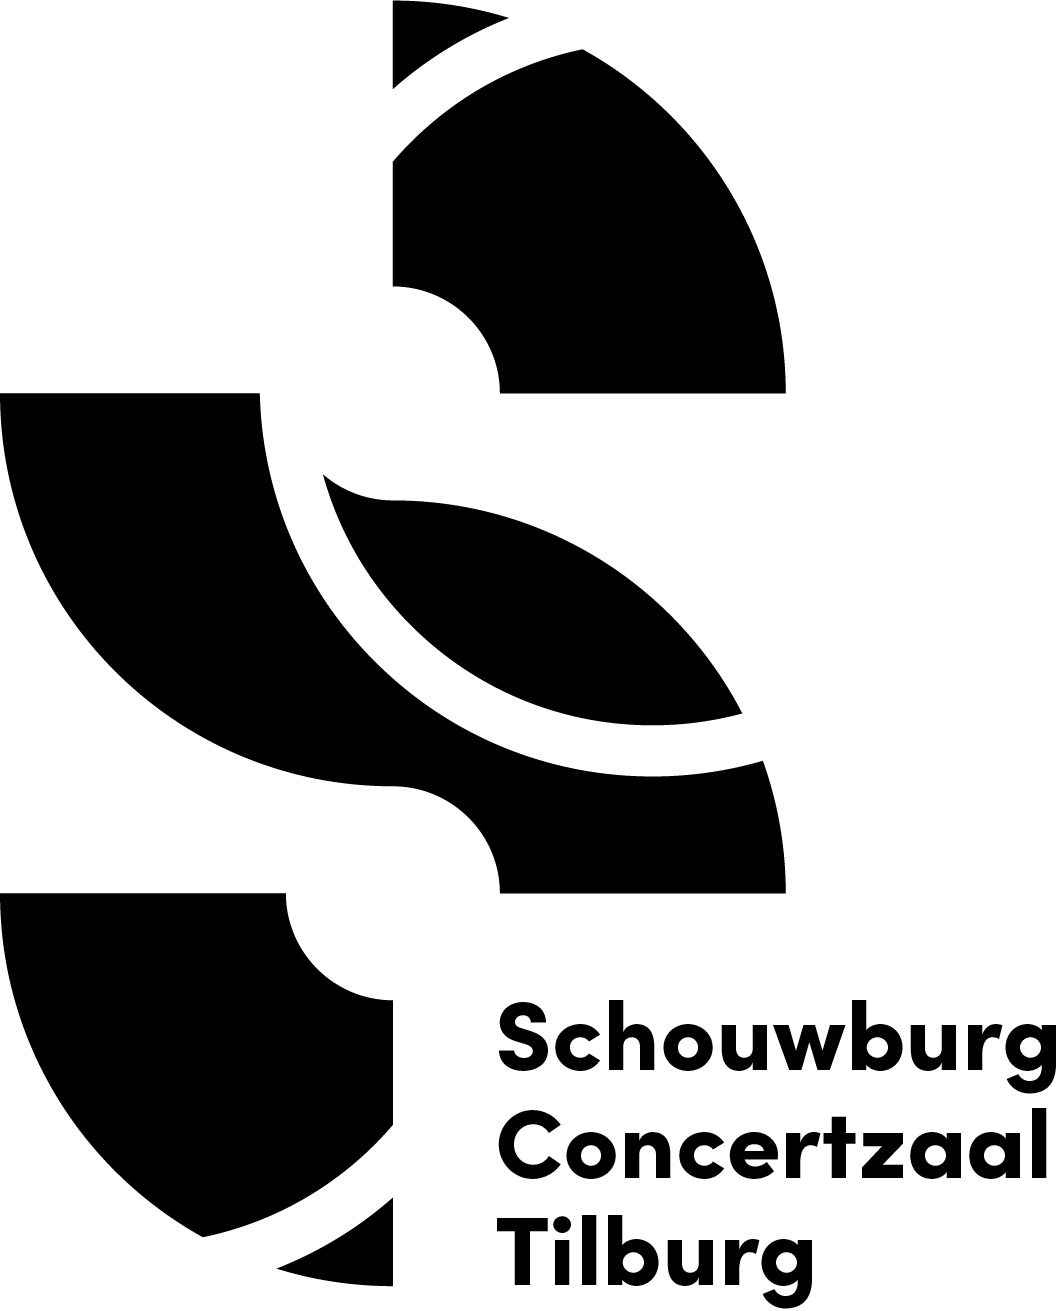 Schouwburg Concertzaal Tilburg